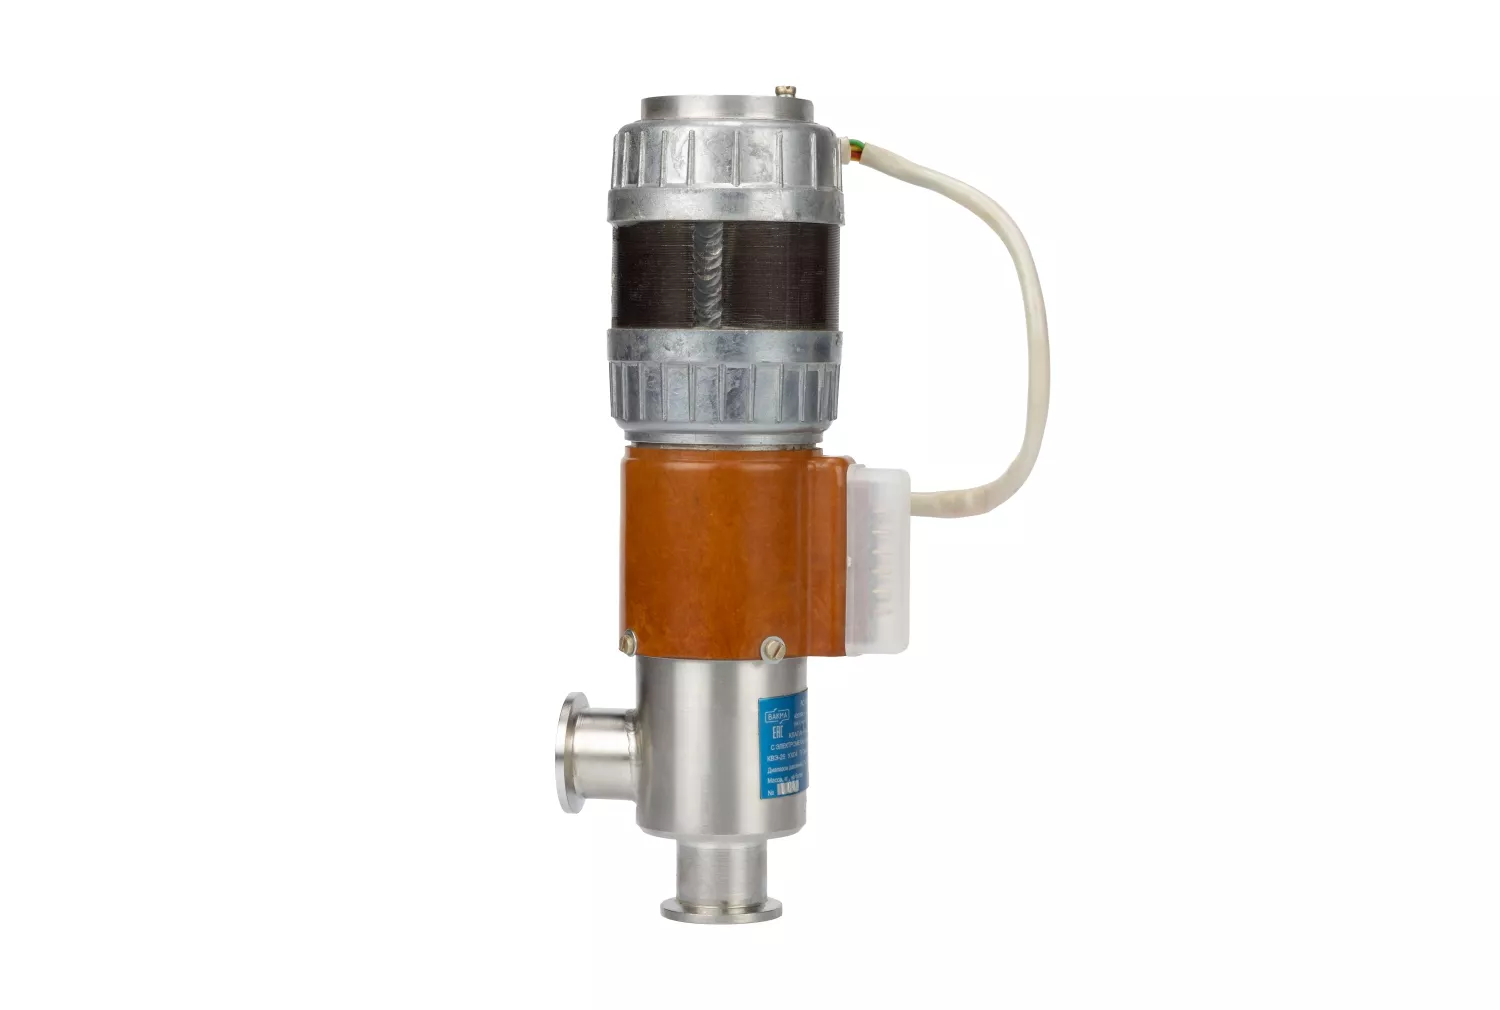 Купить в АО Вакууммаш ✓ Электромеханический вакуумный клапан КВЭ-25 ✦ узнать цены и отзывы в каталоге